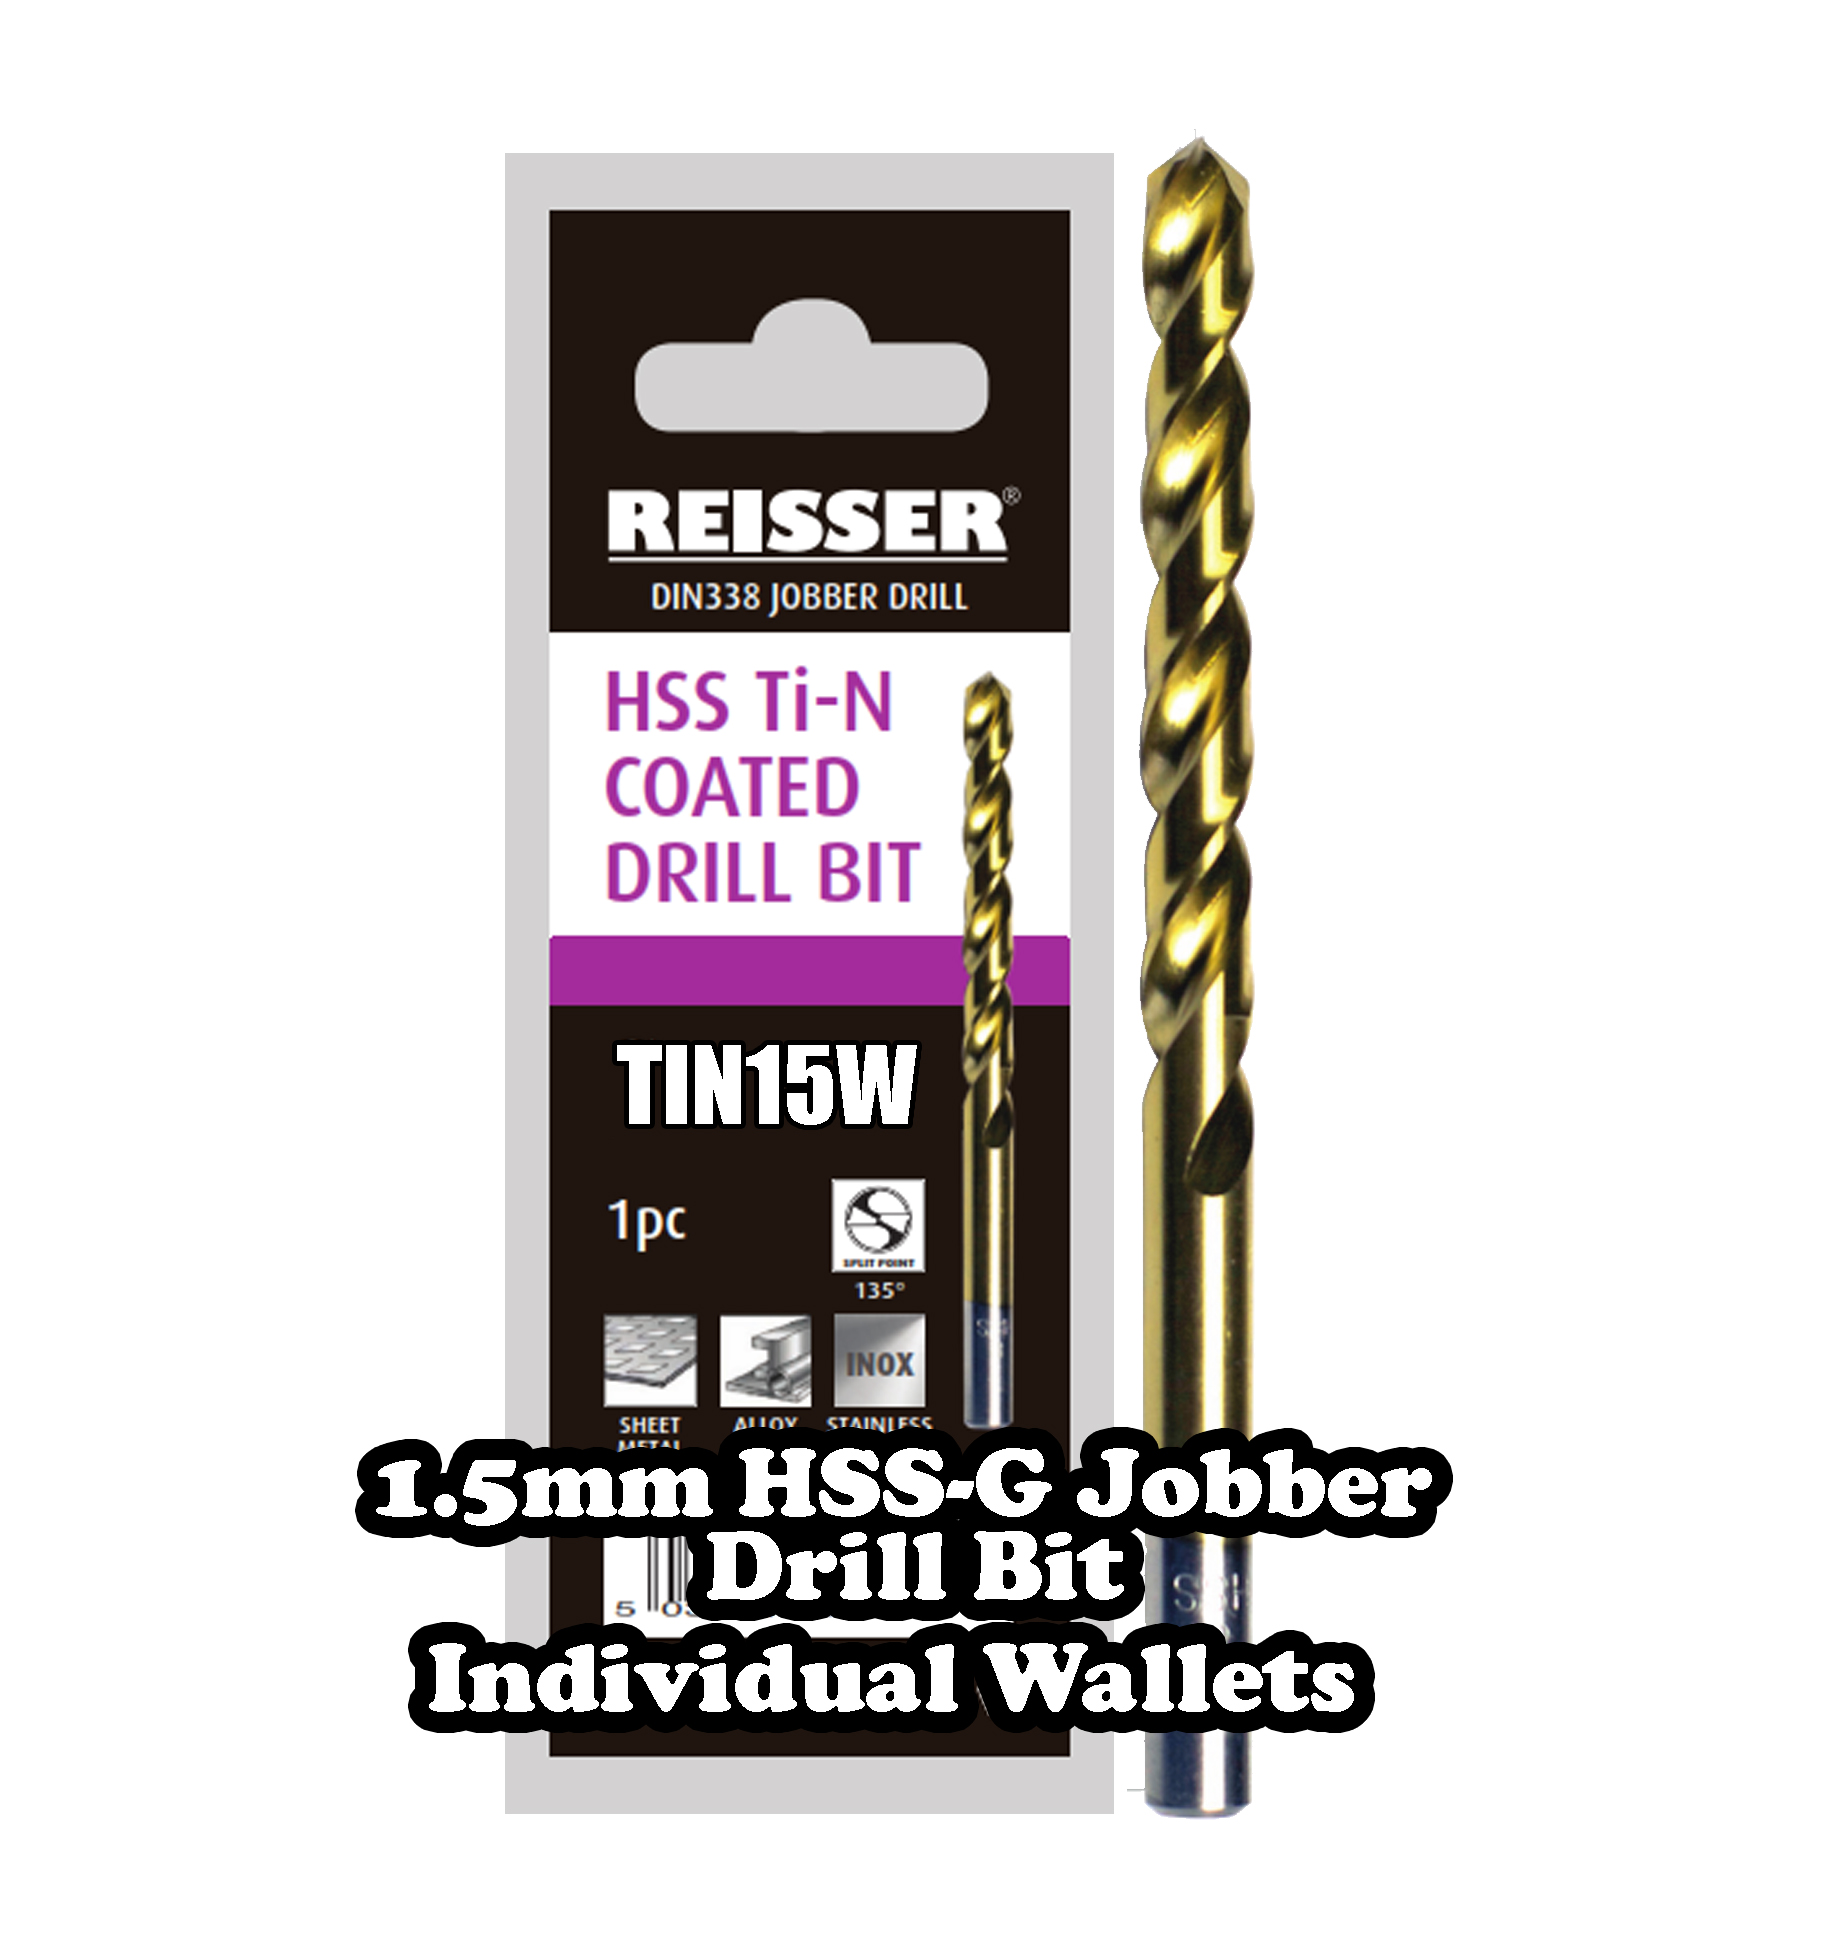 1.5mm HSS Jobber Drill Bit ( SINGLE WALLET )